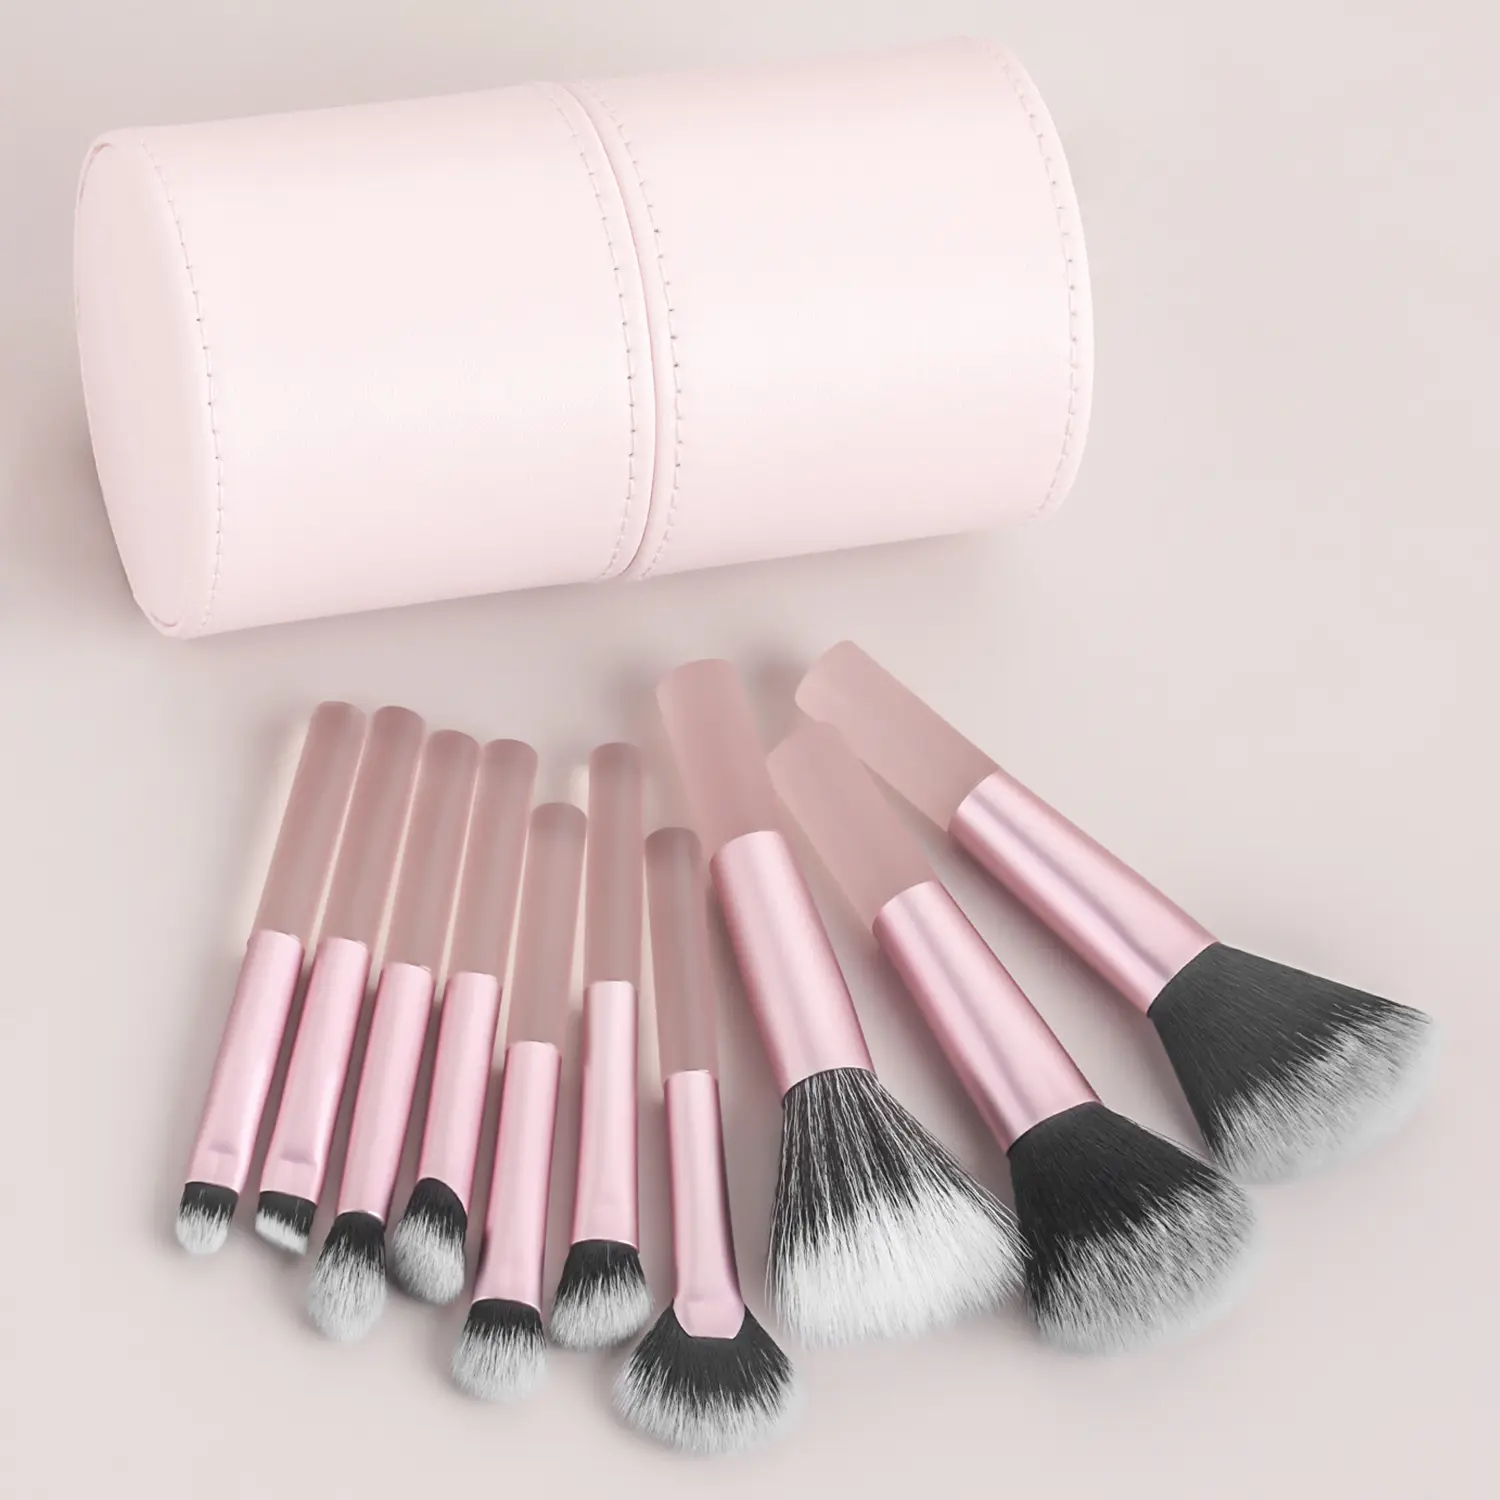 Venta al por mayor tendencia mini pinceles de maquillaje conjunto con cubo de pelo sintético herramientas de belleza 10 piezas Rosa negro portátil maquillaje cepillo conjunto